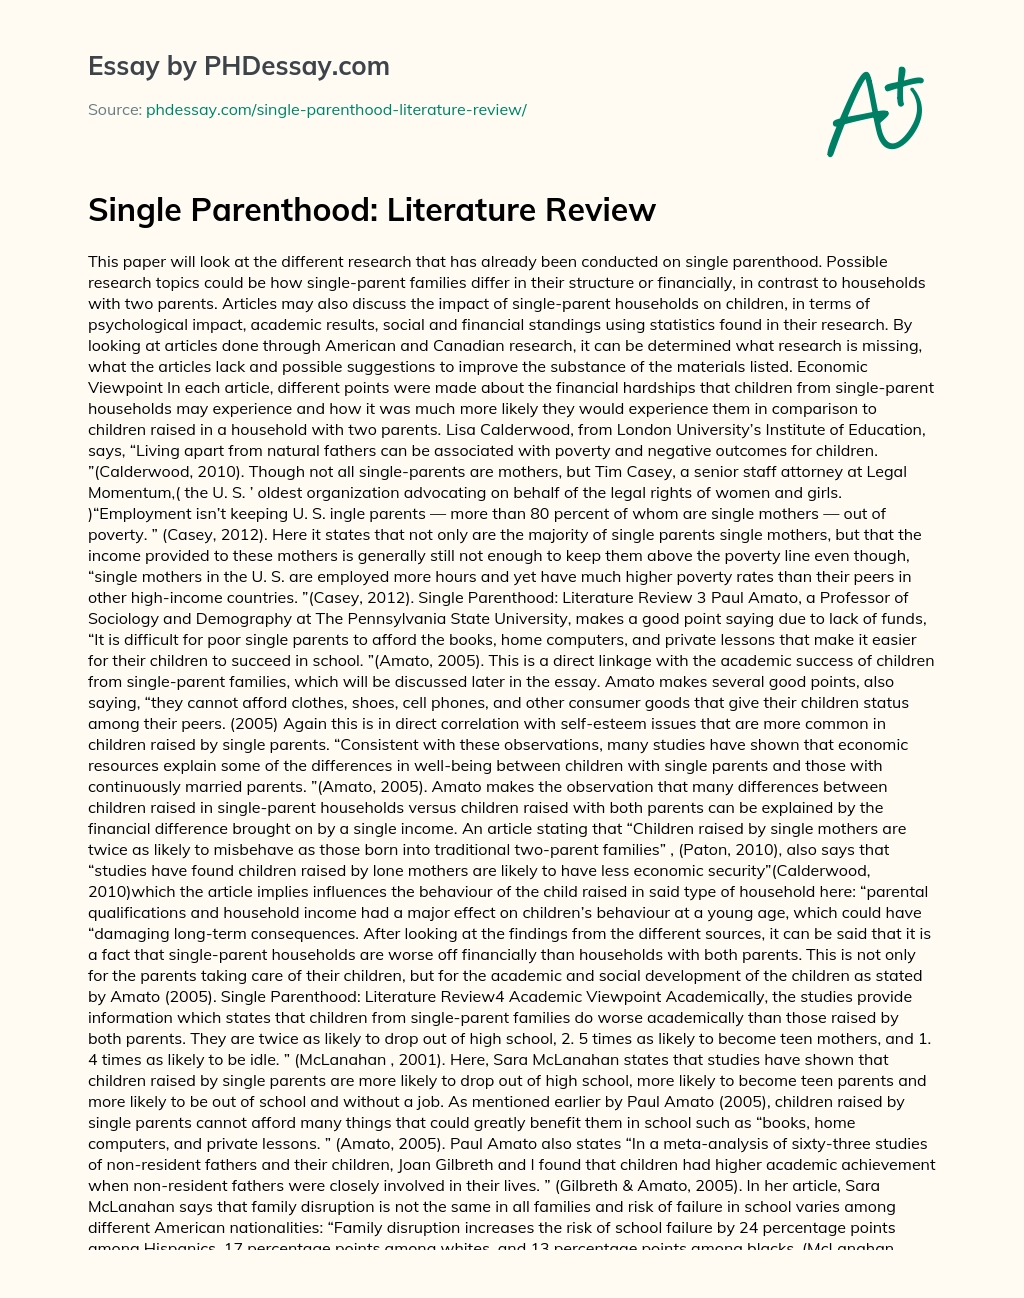 Single Parenthood: Literature Review essay